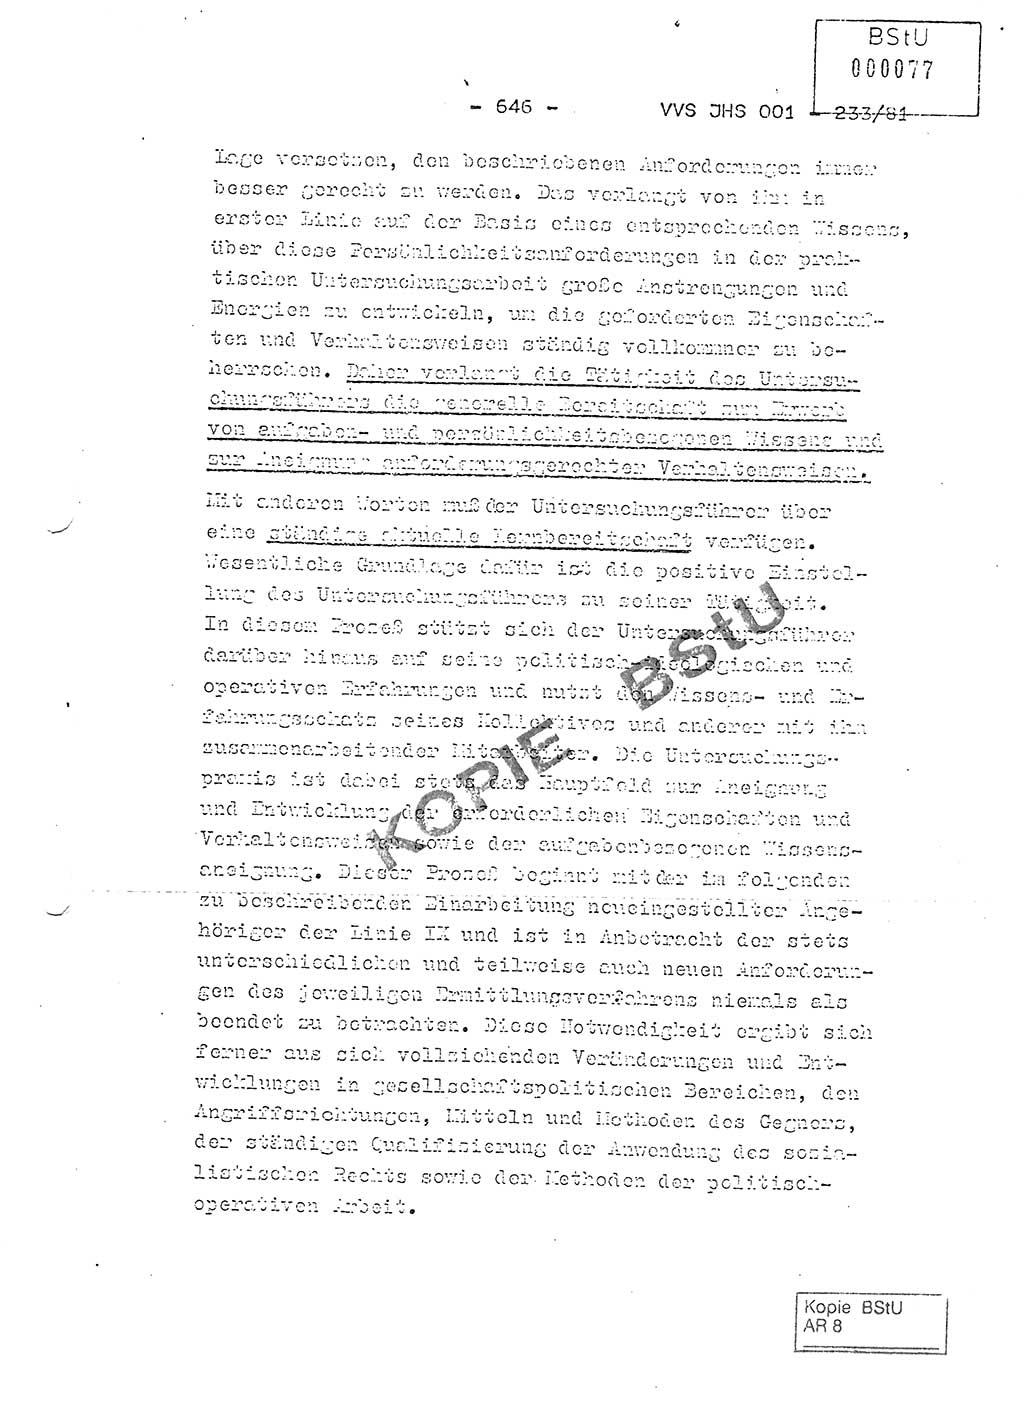 Dissertation Oberstleutnant Horst Zank (JHS), Oberstleutnant Dr. Karl-Heinz Knoblauch (JHS), Oberstleutnant Gustav-Adolf Kowalewski (HA Ⅸ), Oberstleutnant Wolfgang Plötner (HA Ⅸ), Ministerium für Staatssicherheit (MfS) [Deutsche Demokratische Republik (DDR)], Juristische Hochschule (JHS), Vertrauliche Verschlußsache (VVS) o001-233/81, Potsdam 1981, Blatt 646 (Diss. MfS DDR JHS VVS o001-233/81 1981, Bl. 646)